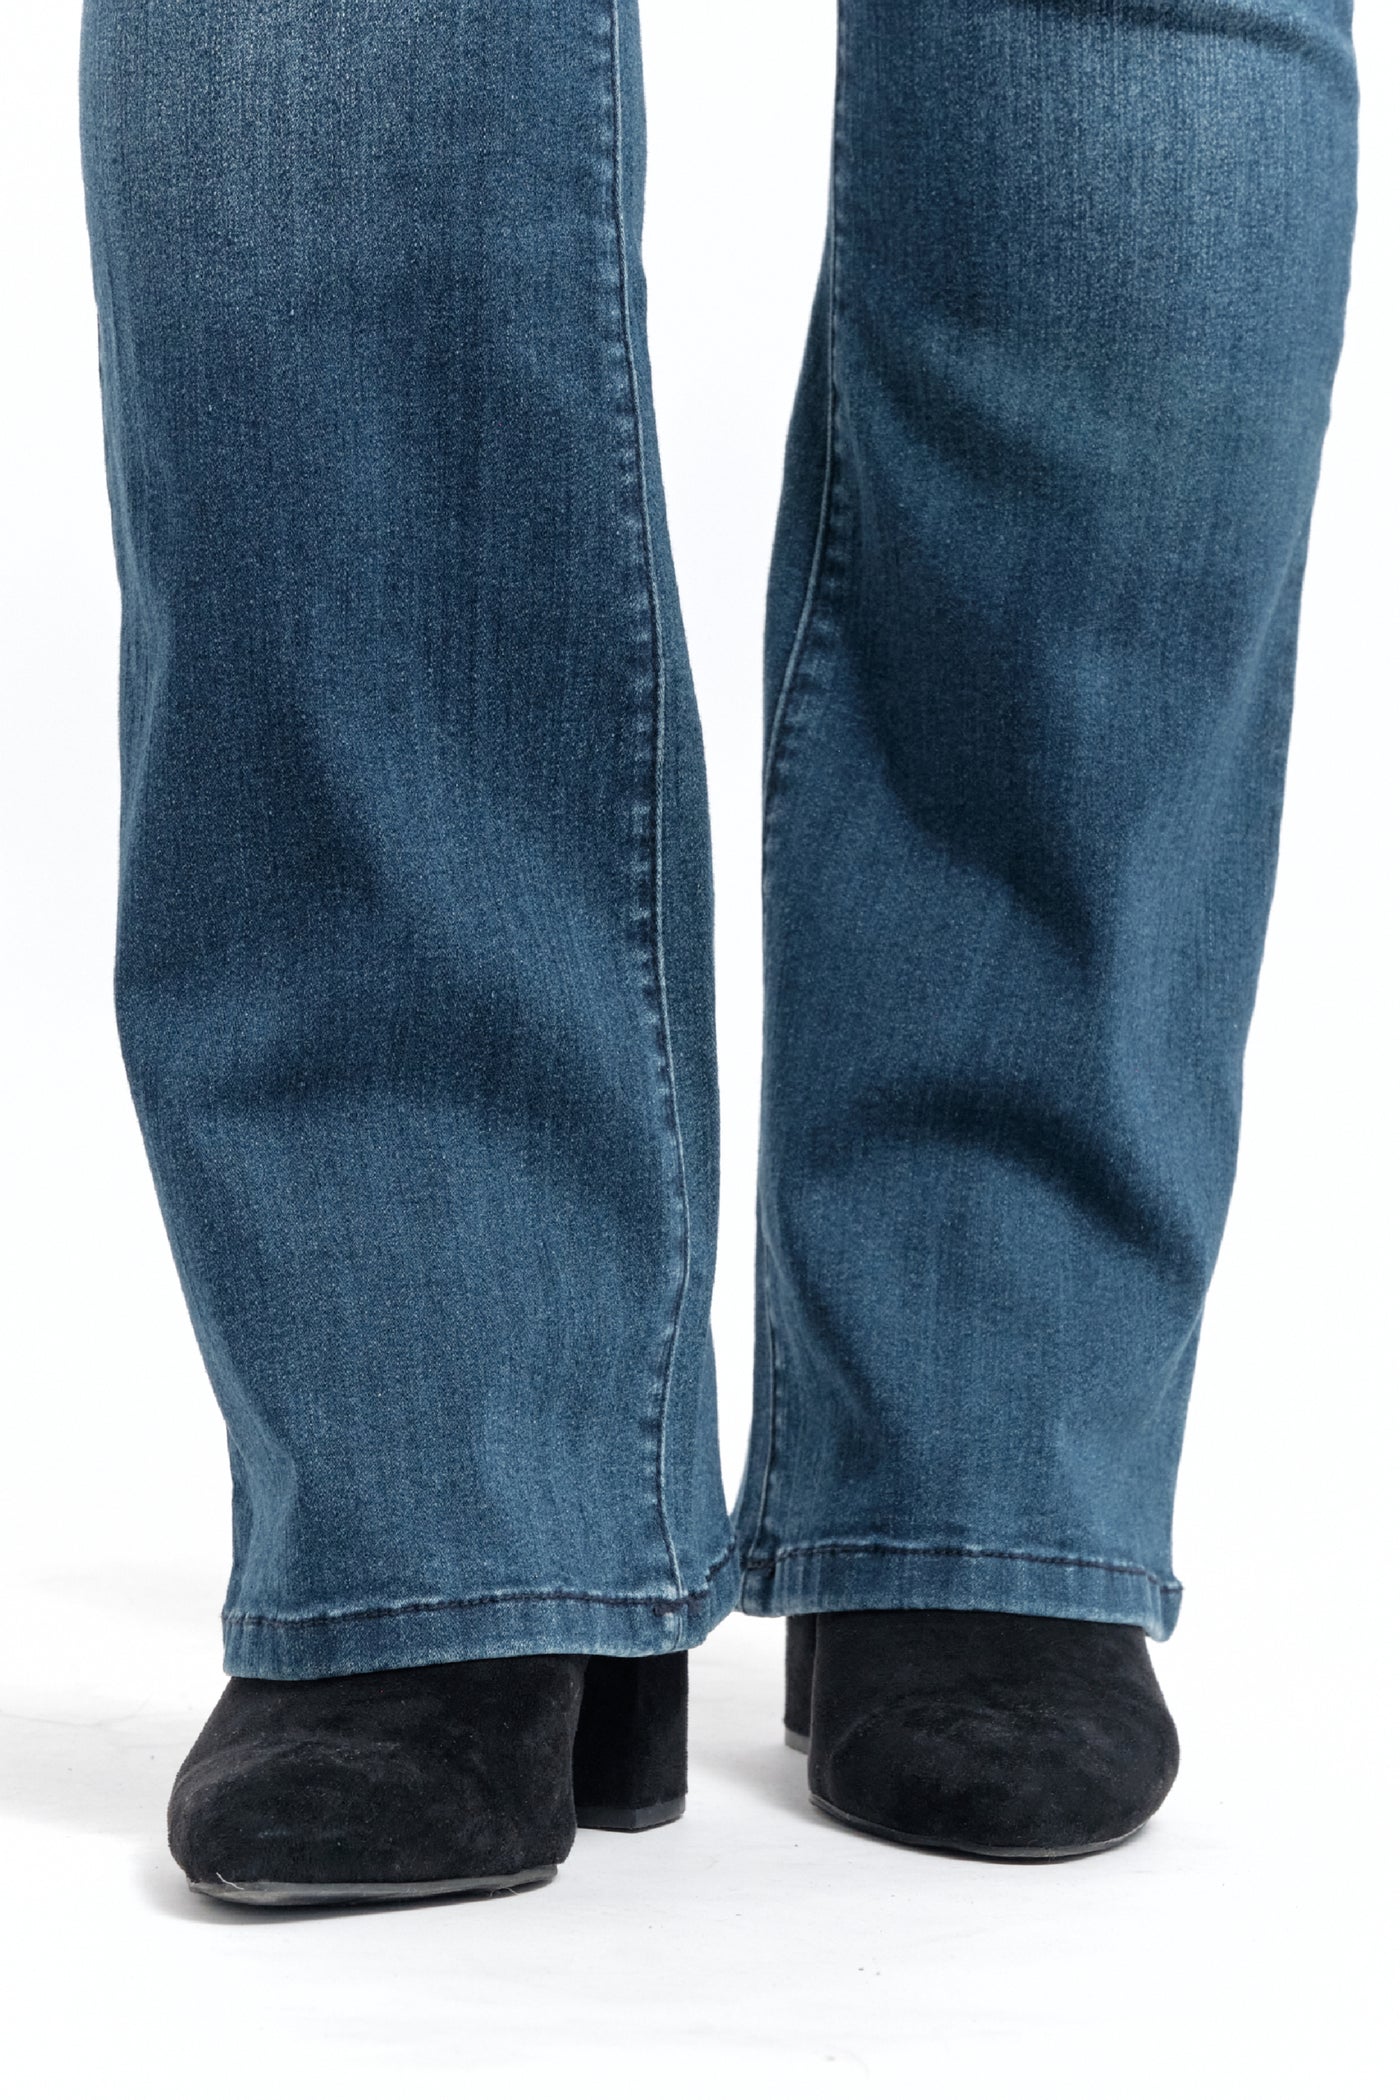 1822 Denim Men's Straight Leg Jeans - Blue - 32